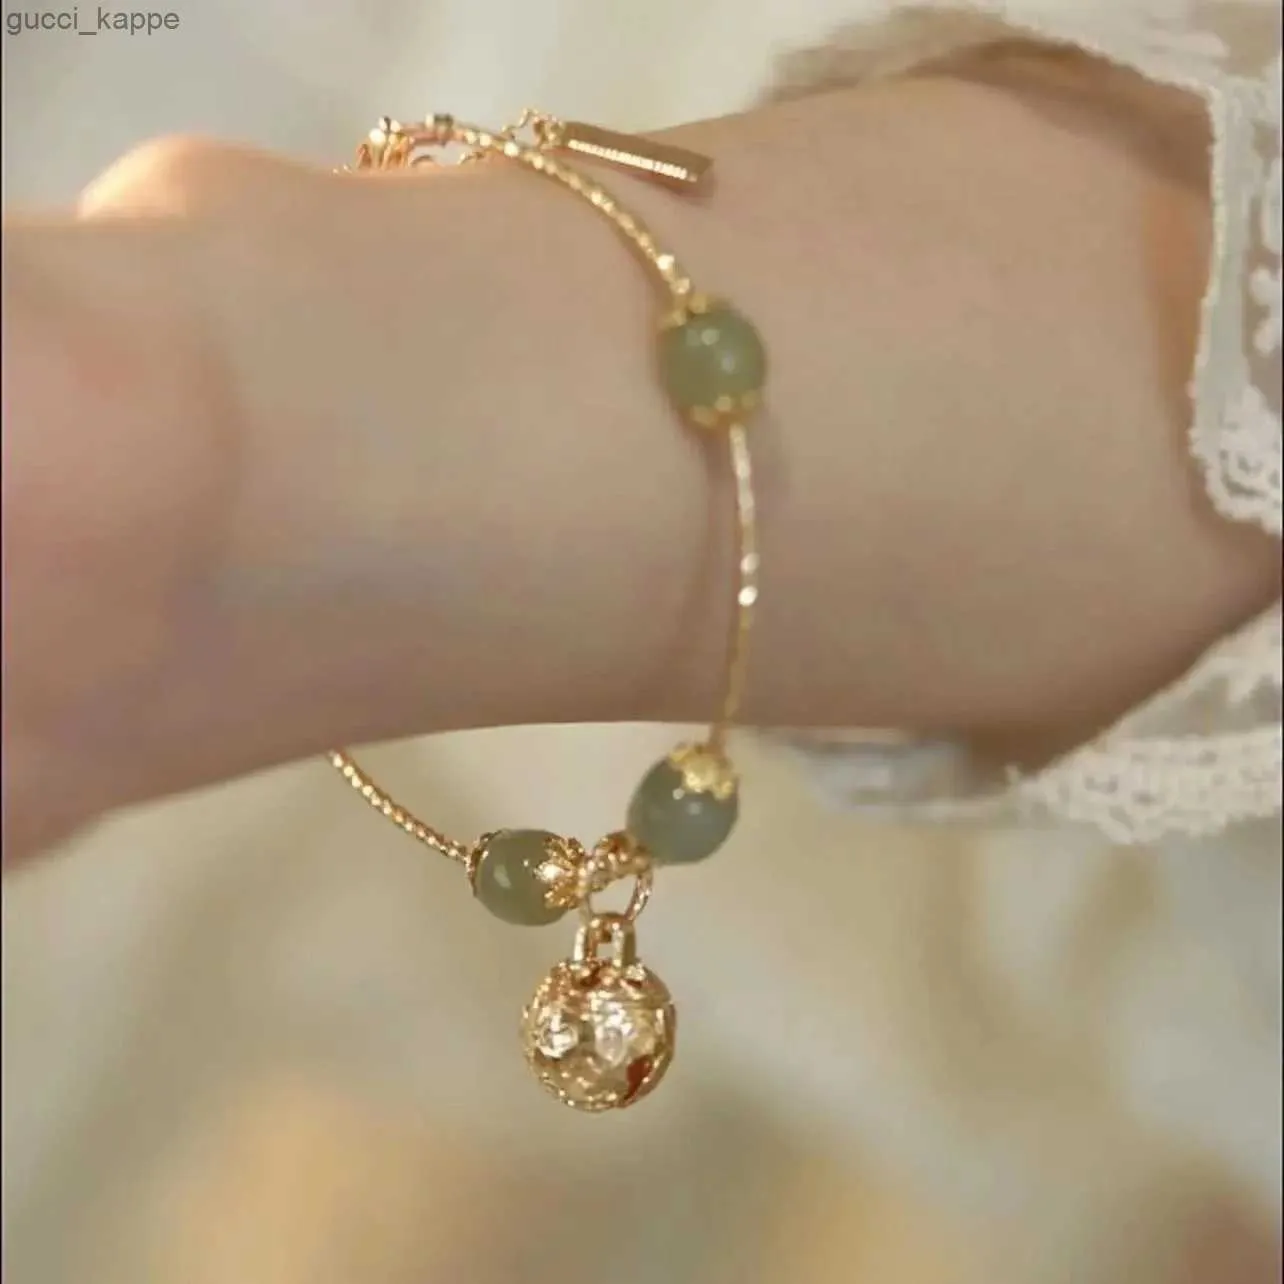 Корейская модная мода натуральный хетан нефтяной колокольчик браслет для женщин девушки амулет ювелирные украшения День Матери Подарок Золотый цвет на запясть